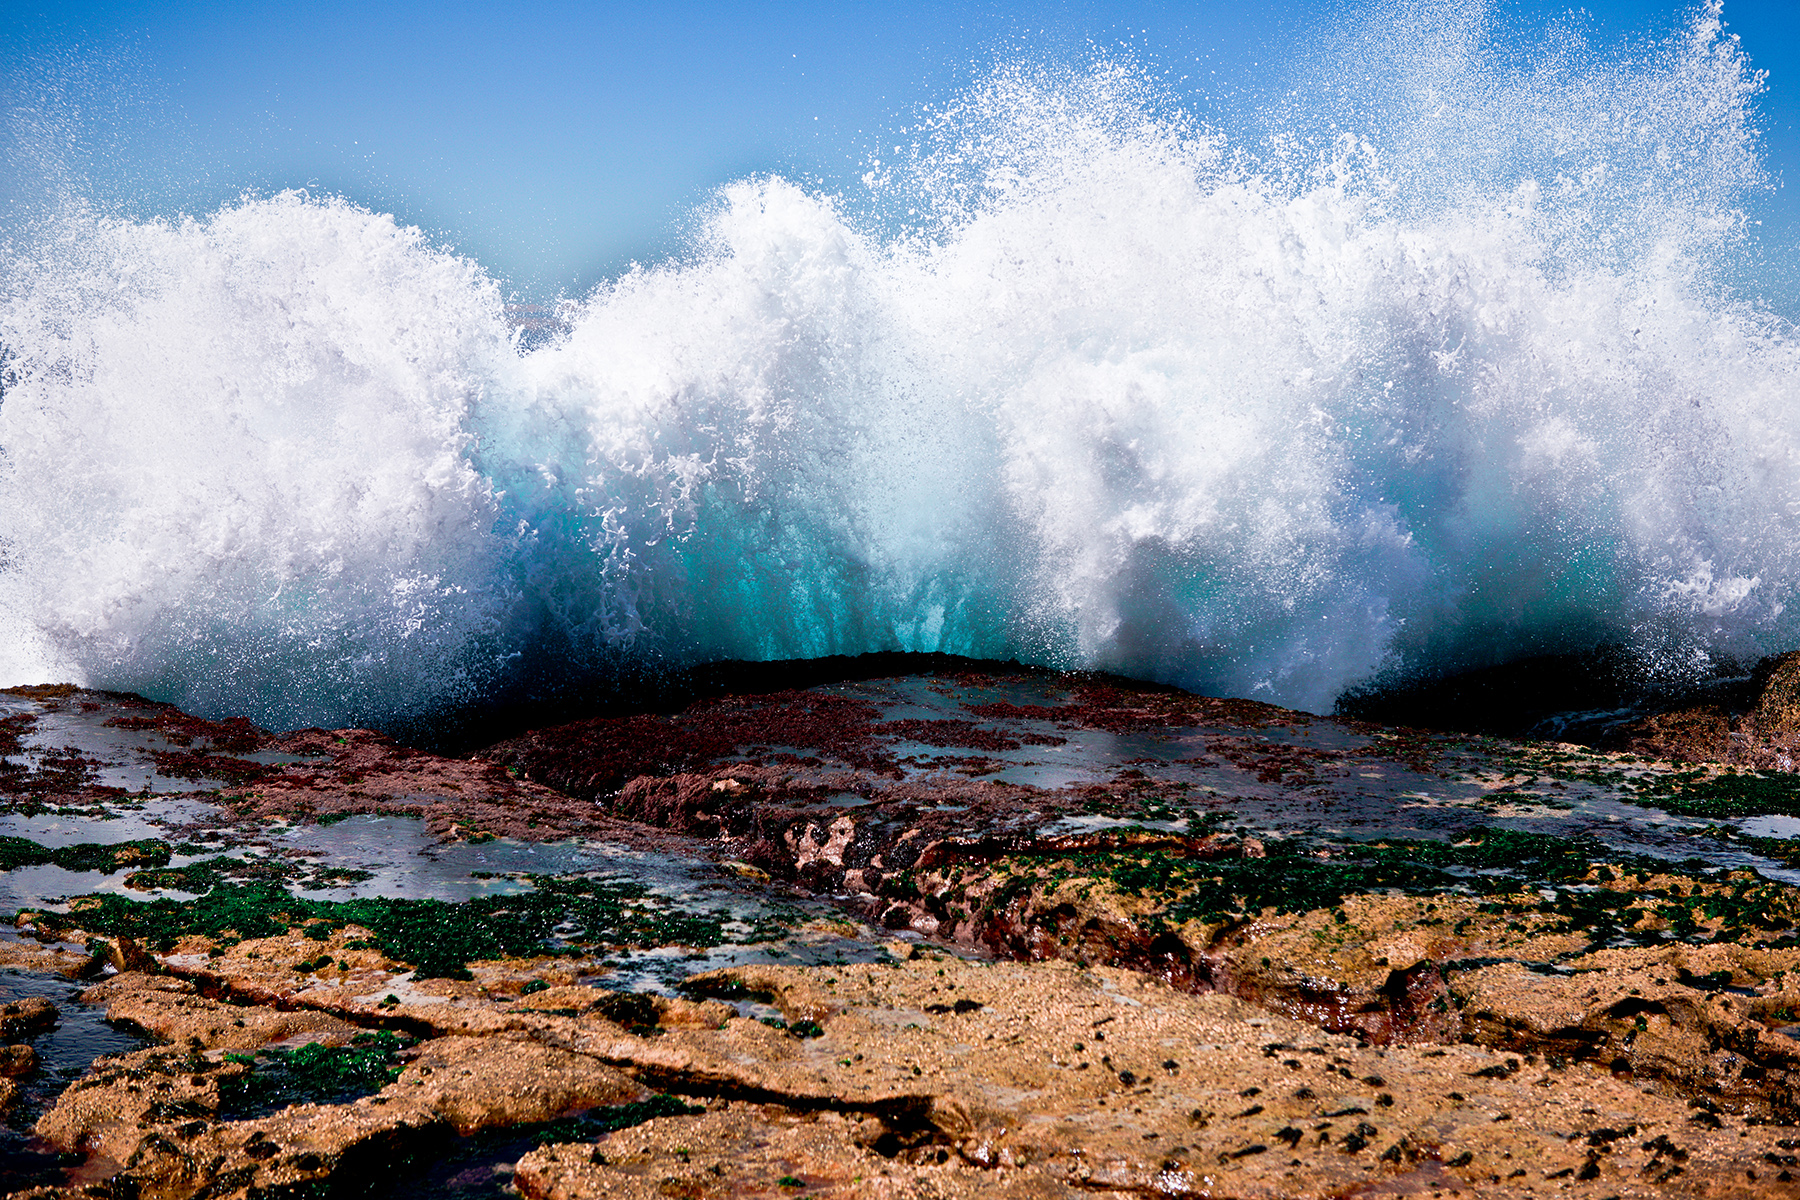 Ocean waves crashing into a rocky shore